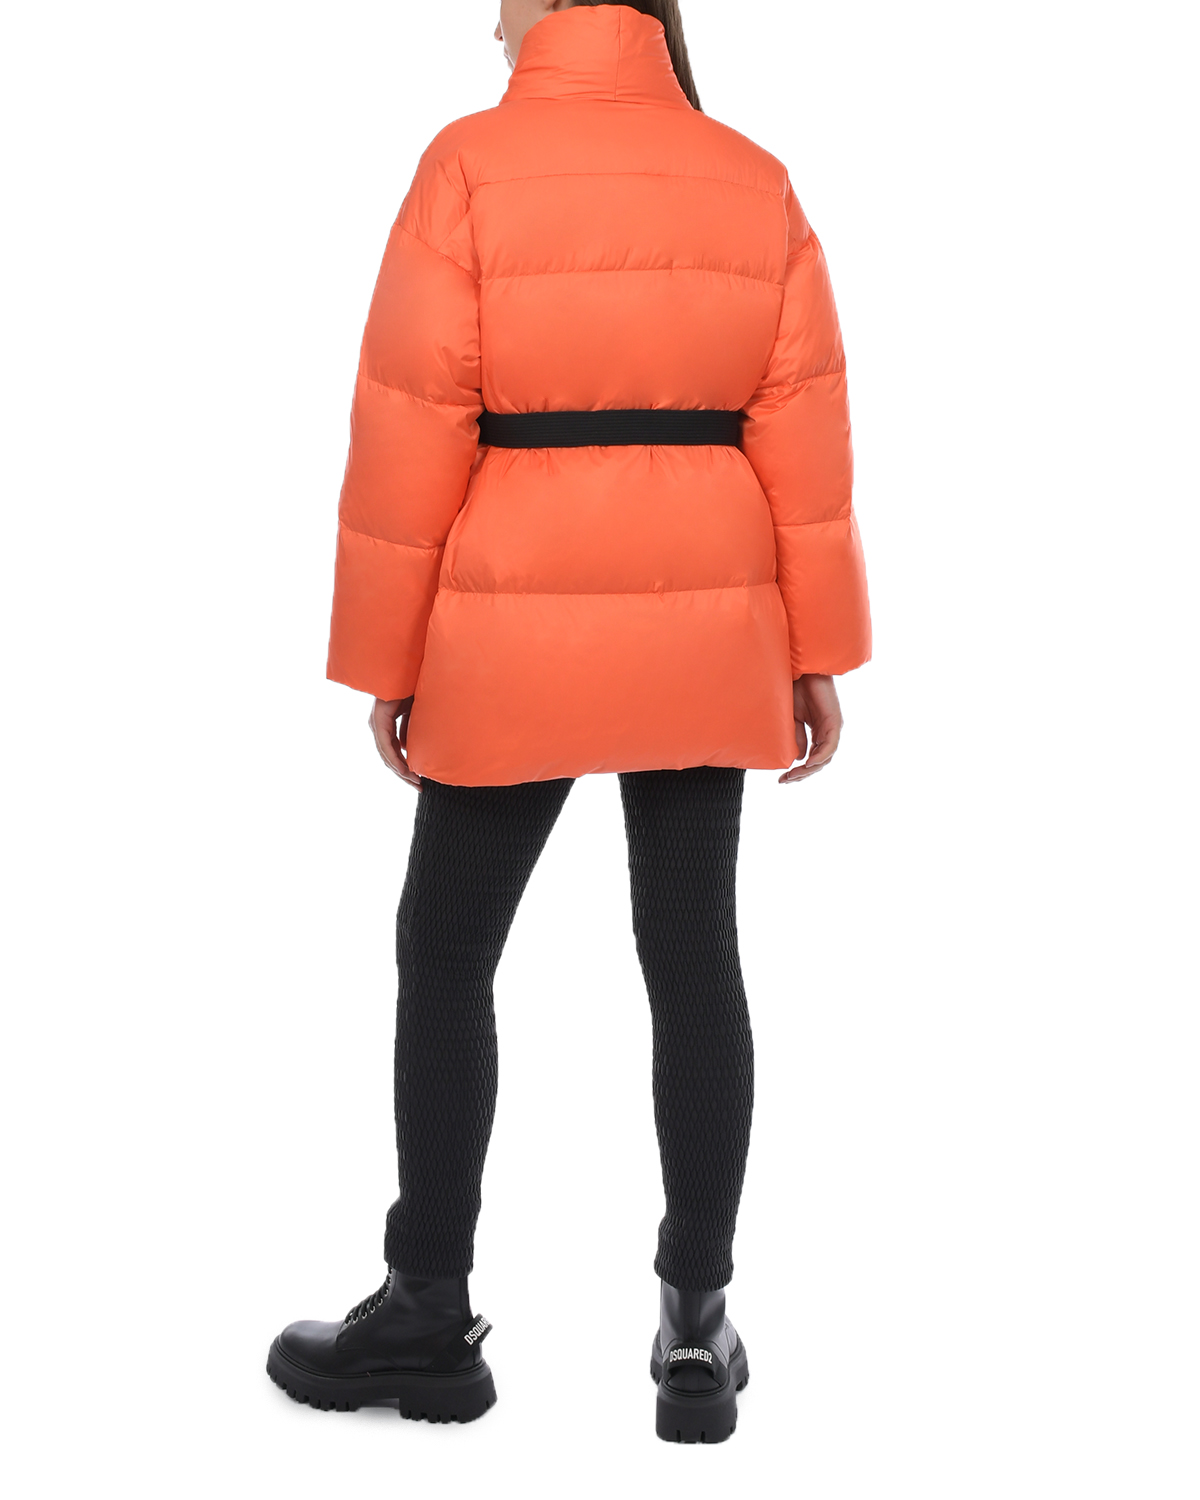 Оранжевая куртка с черным поясом Naumi, размер 36, цвет оранжевый - фото 7